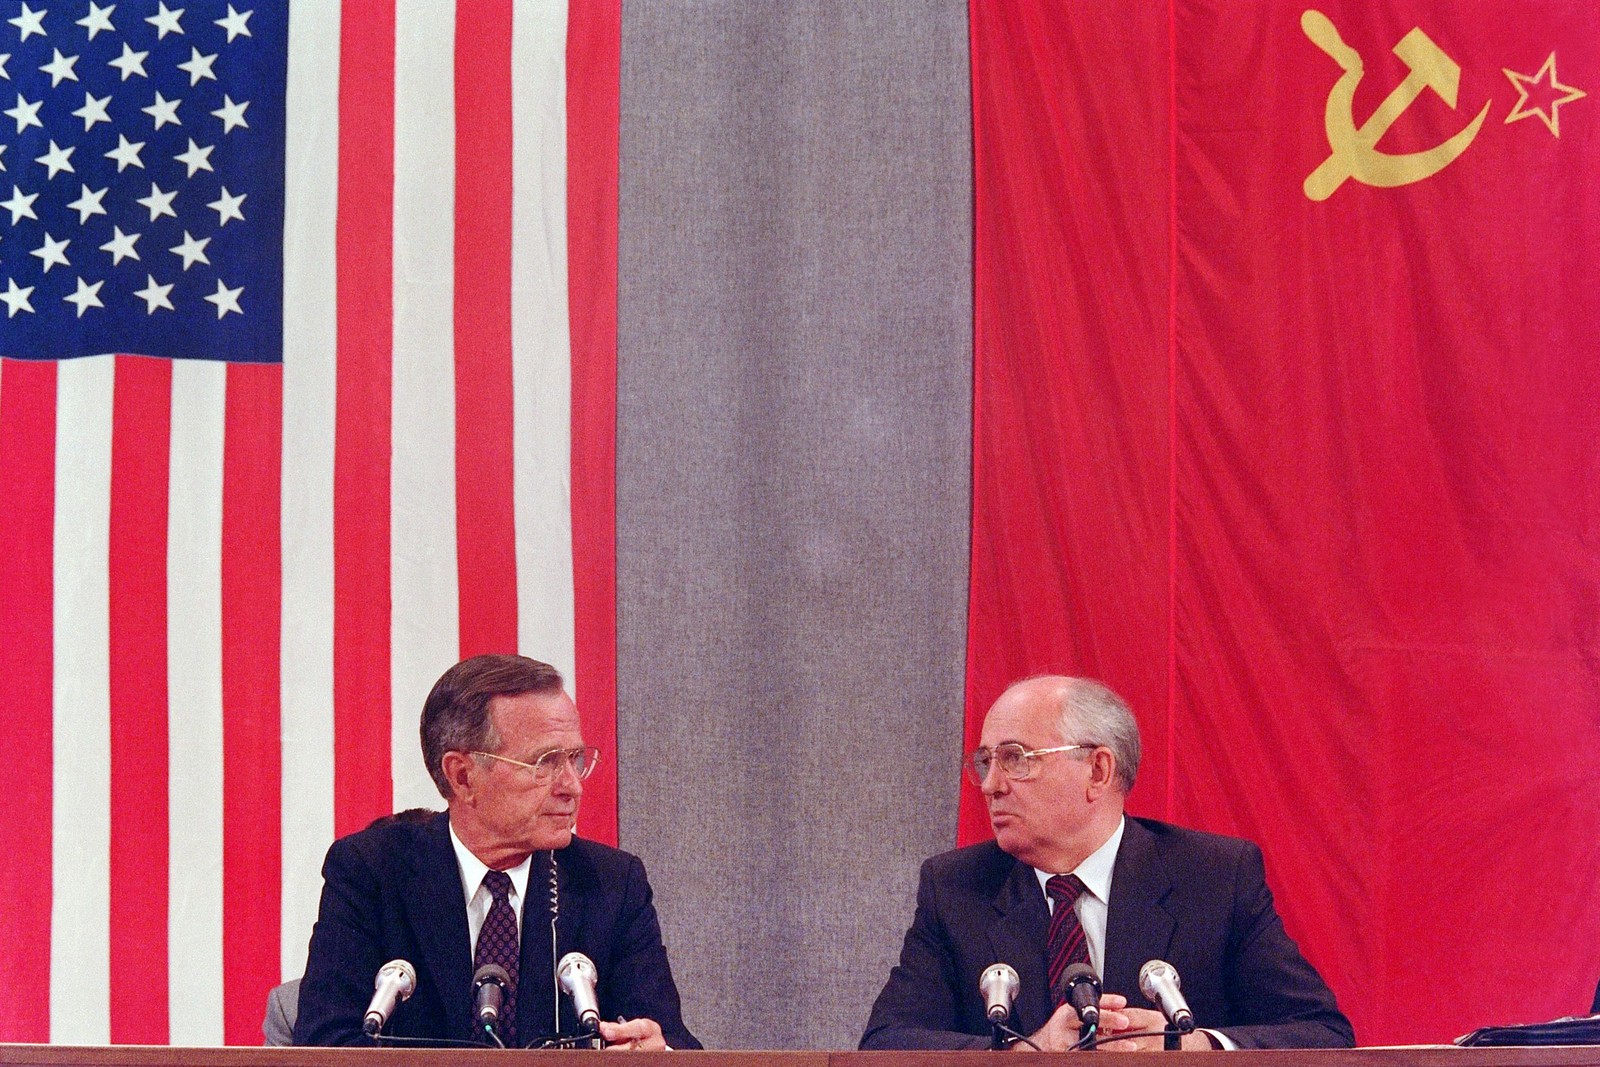 Em 1991, o então presidente dos EUA, George Bush (esquerda), e o presidente soviético, Mikhail Gorbachev, durante conferência de imprensa, em Moscou, concluindo a Cúpula EUA-Soviética dedicada ao desarmamento. — Foto: MIKE FISHER / AFP